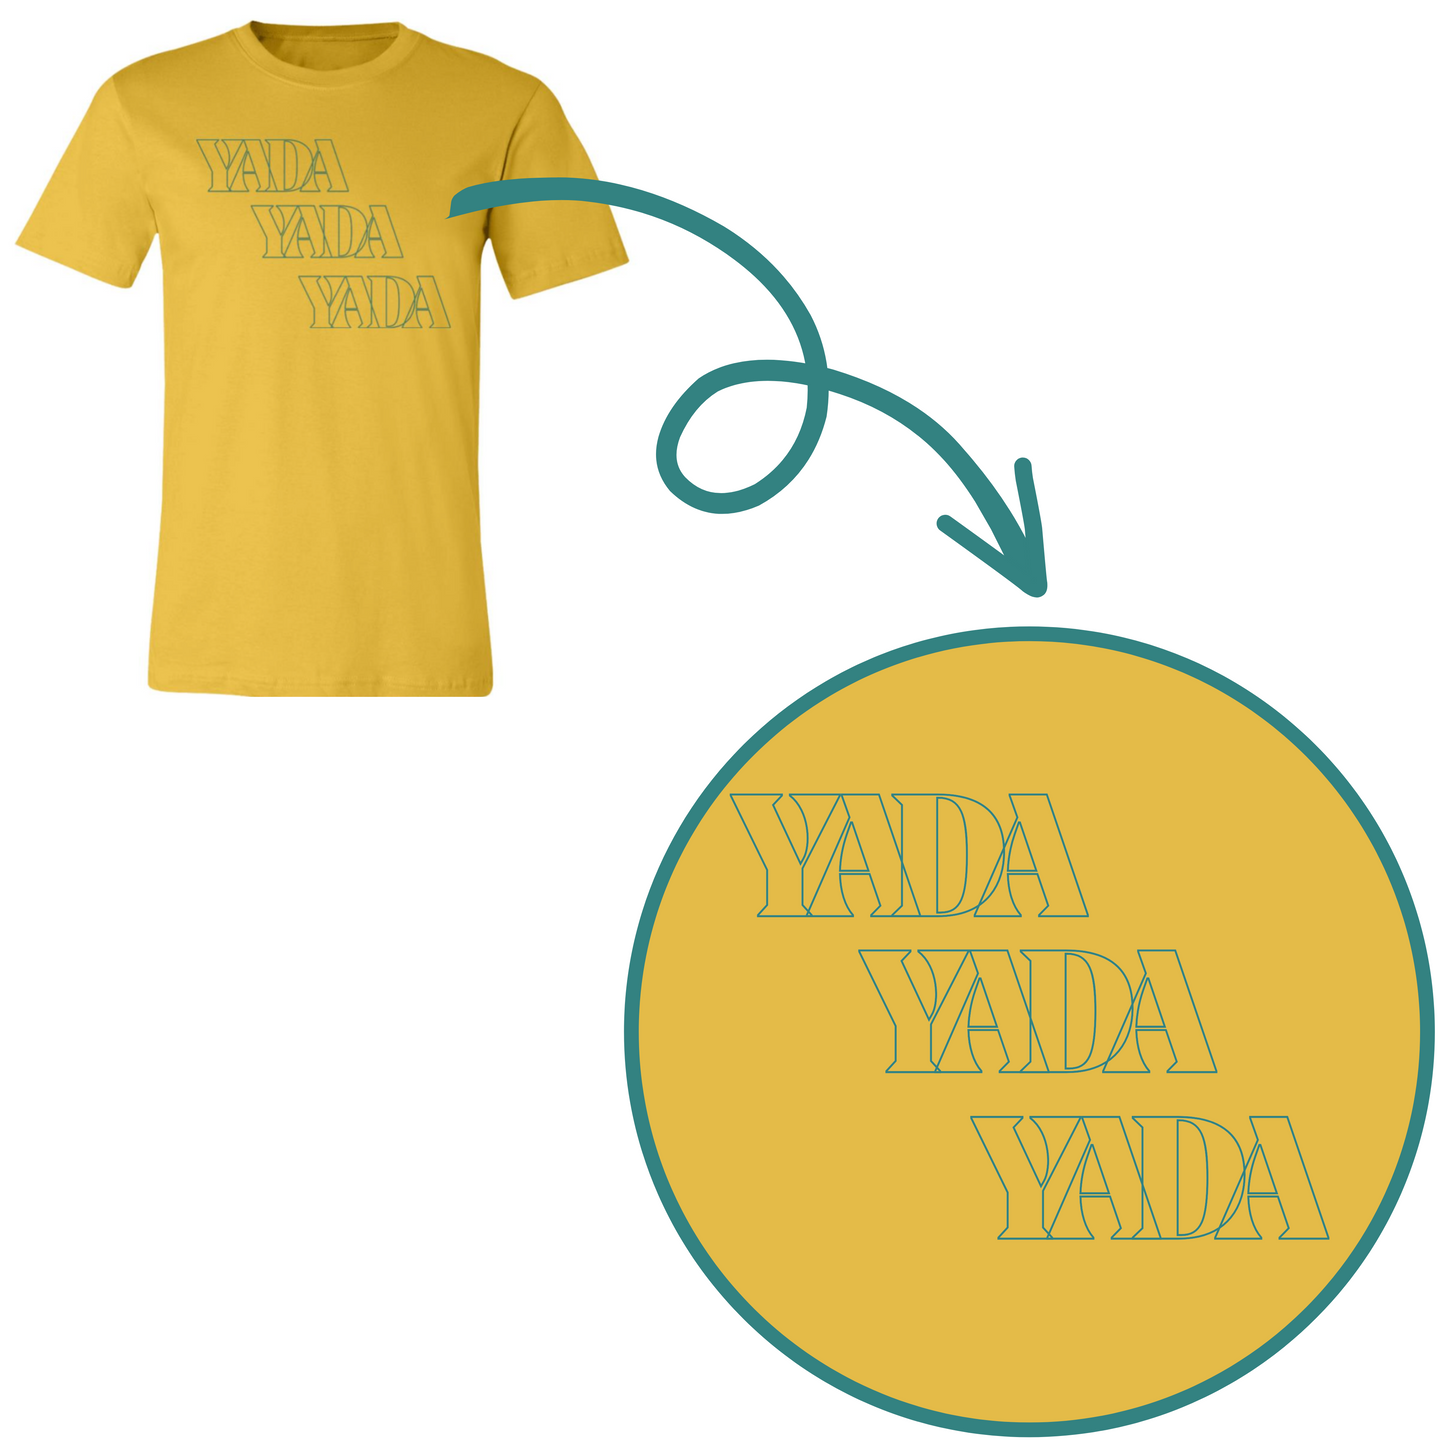 Seinfeld Yada Yada Yada Graphic T-Shirt